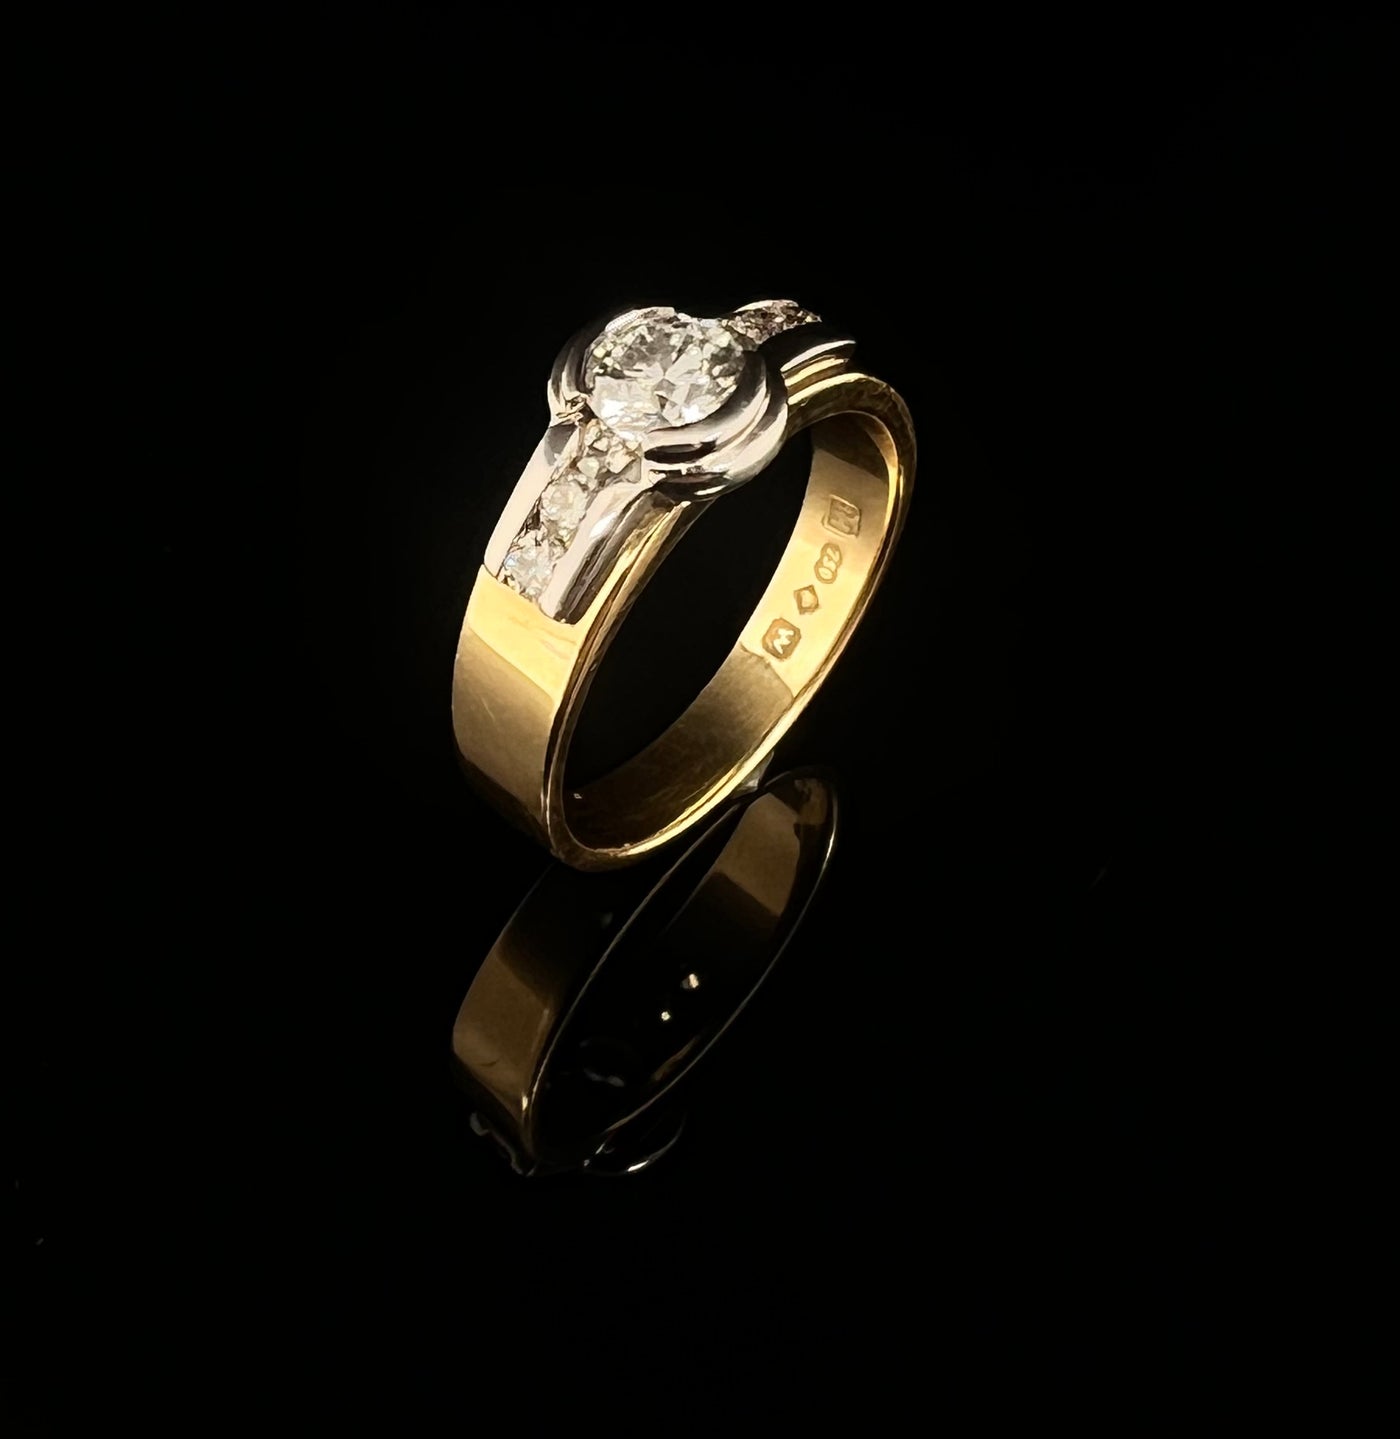 Diamond in a Bezel Ring